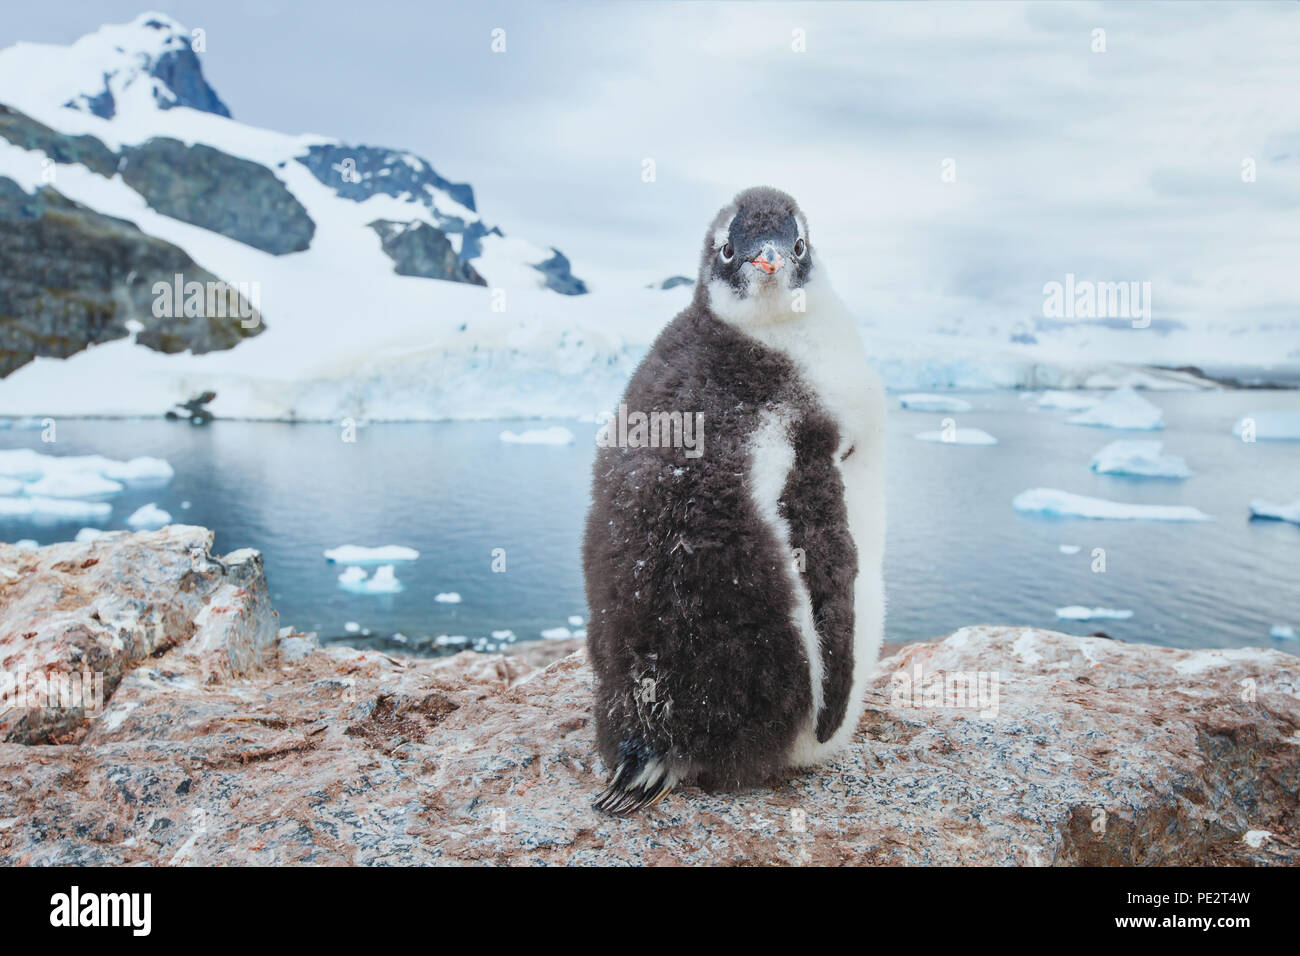 Chic de pingüinos gentoo en la Antártica, curioso animal divertido baby bird retrato mirando a la cámara, naturaleza fauna antártica Foto de stock